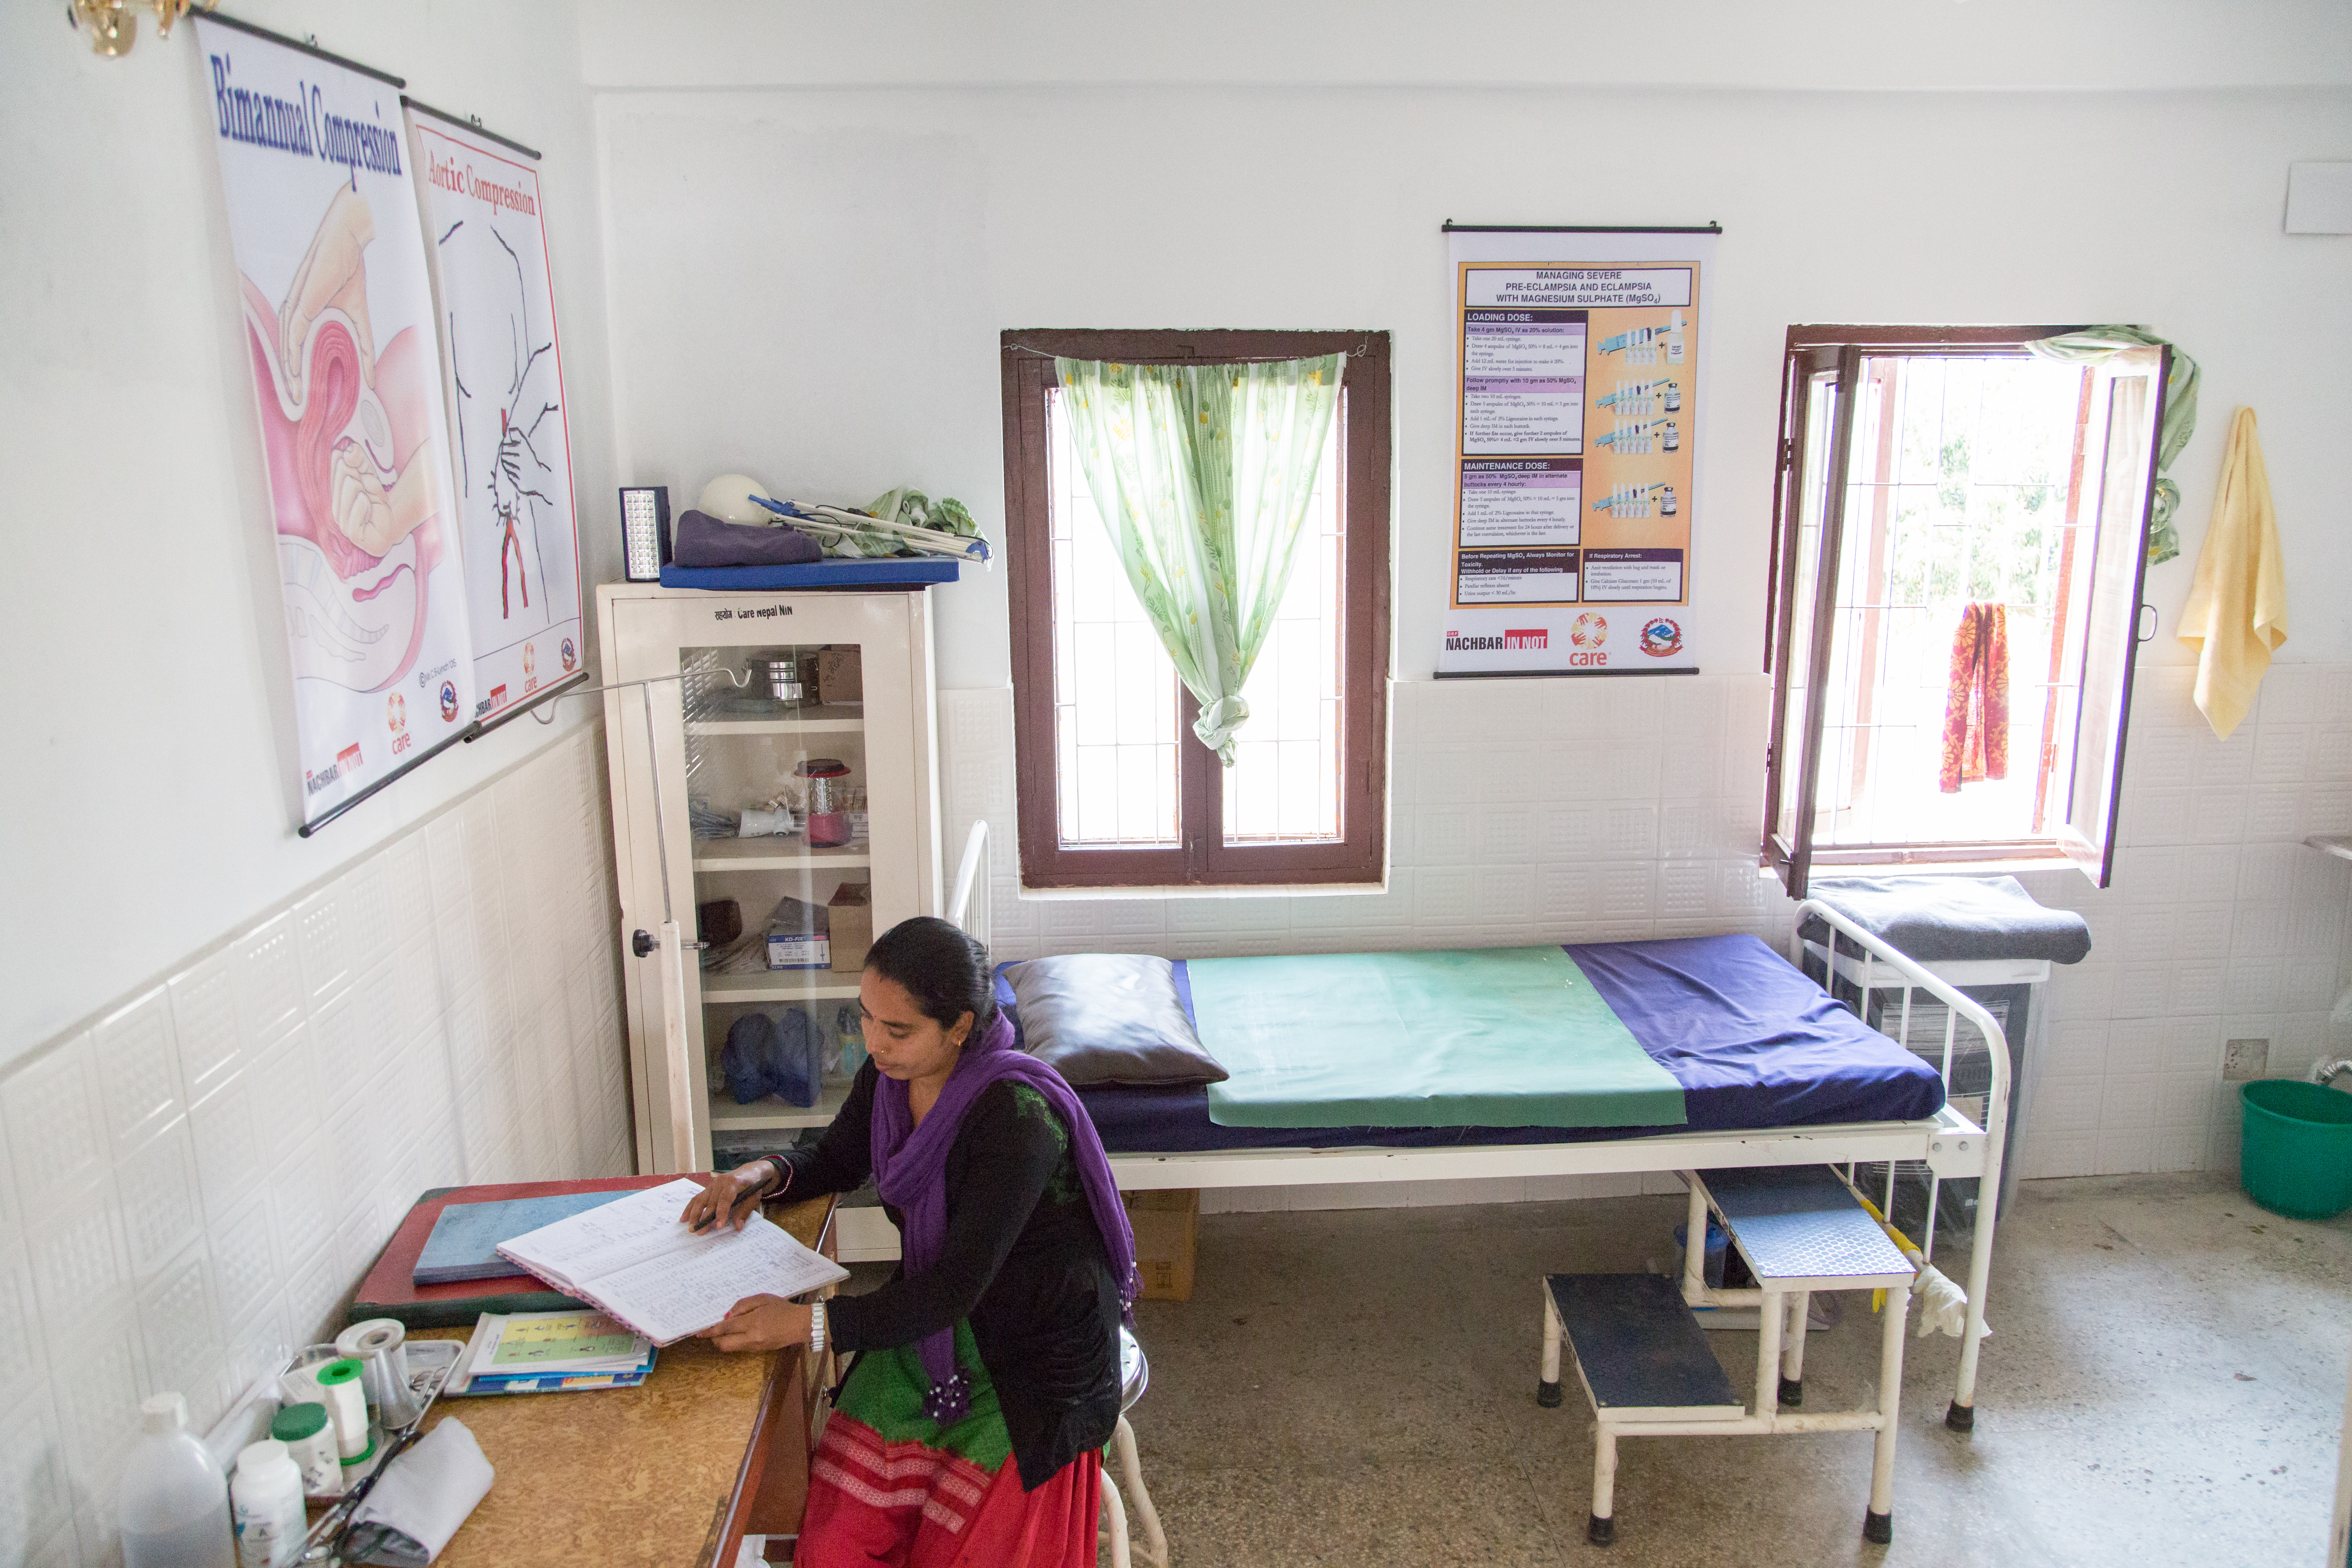 Sogenannte Birthing centre - also Geburtsstationen - wurden nach dem Erdbeben wieder aufgebaut, um Schwangeren und jungen Müttern eine sichere Umgebung zu bieten.